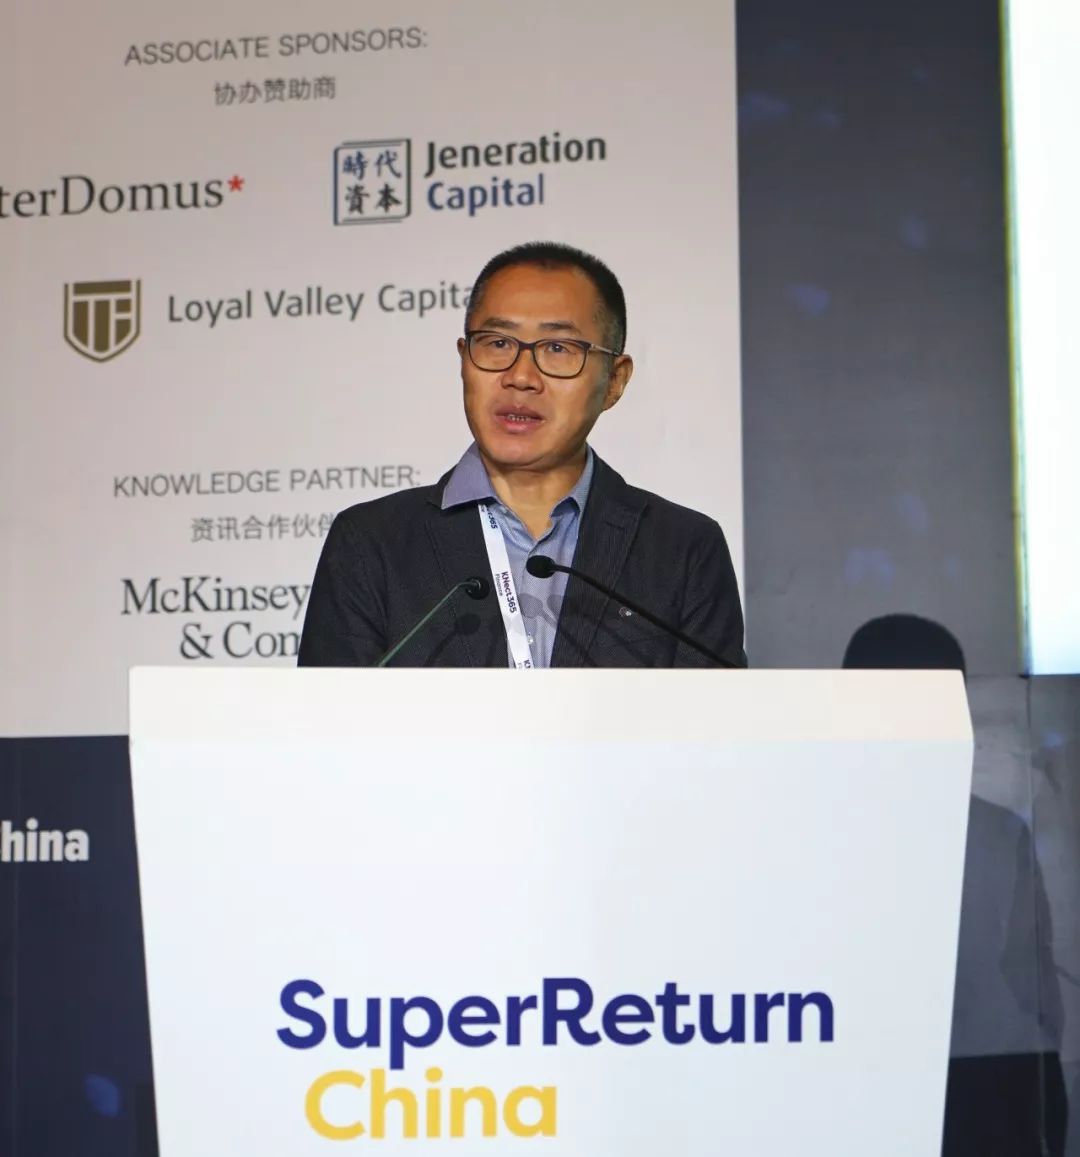 superreturn:高特佳蔡达建详解中国医疗健康投资机会